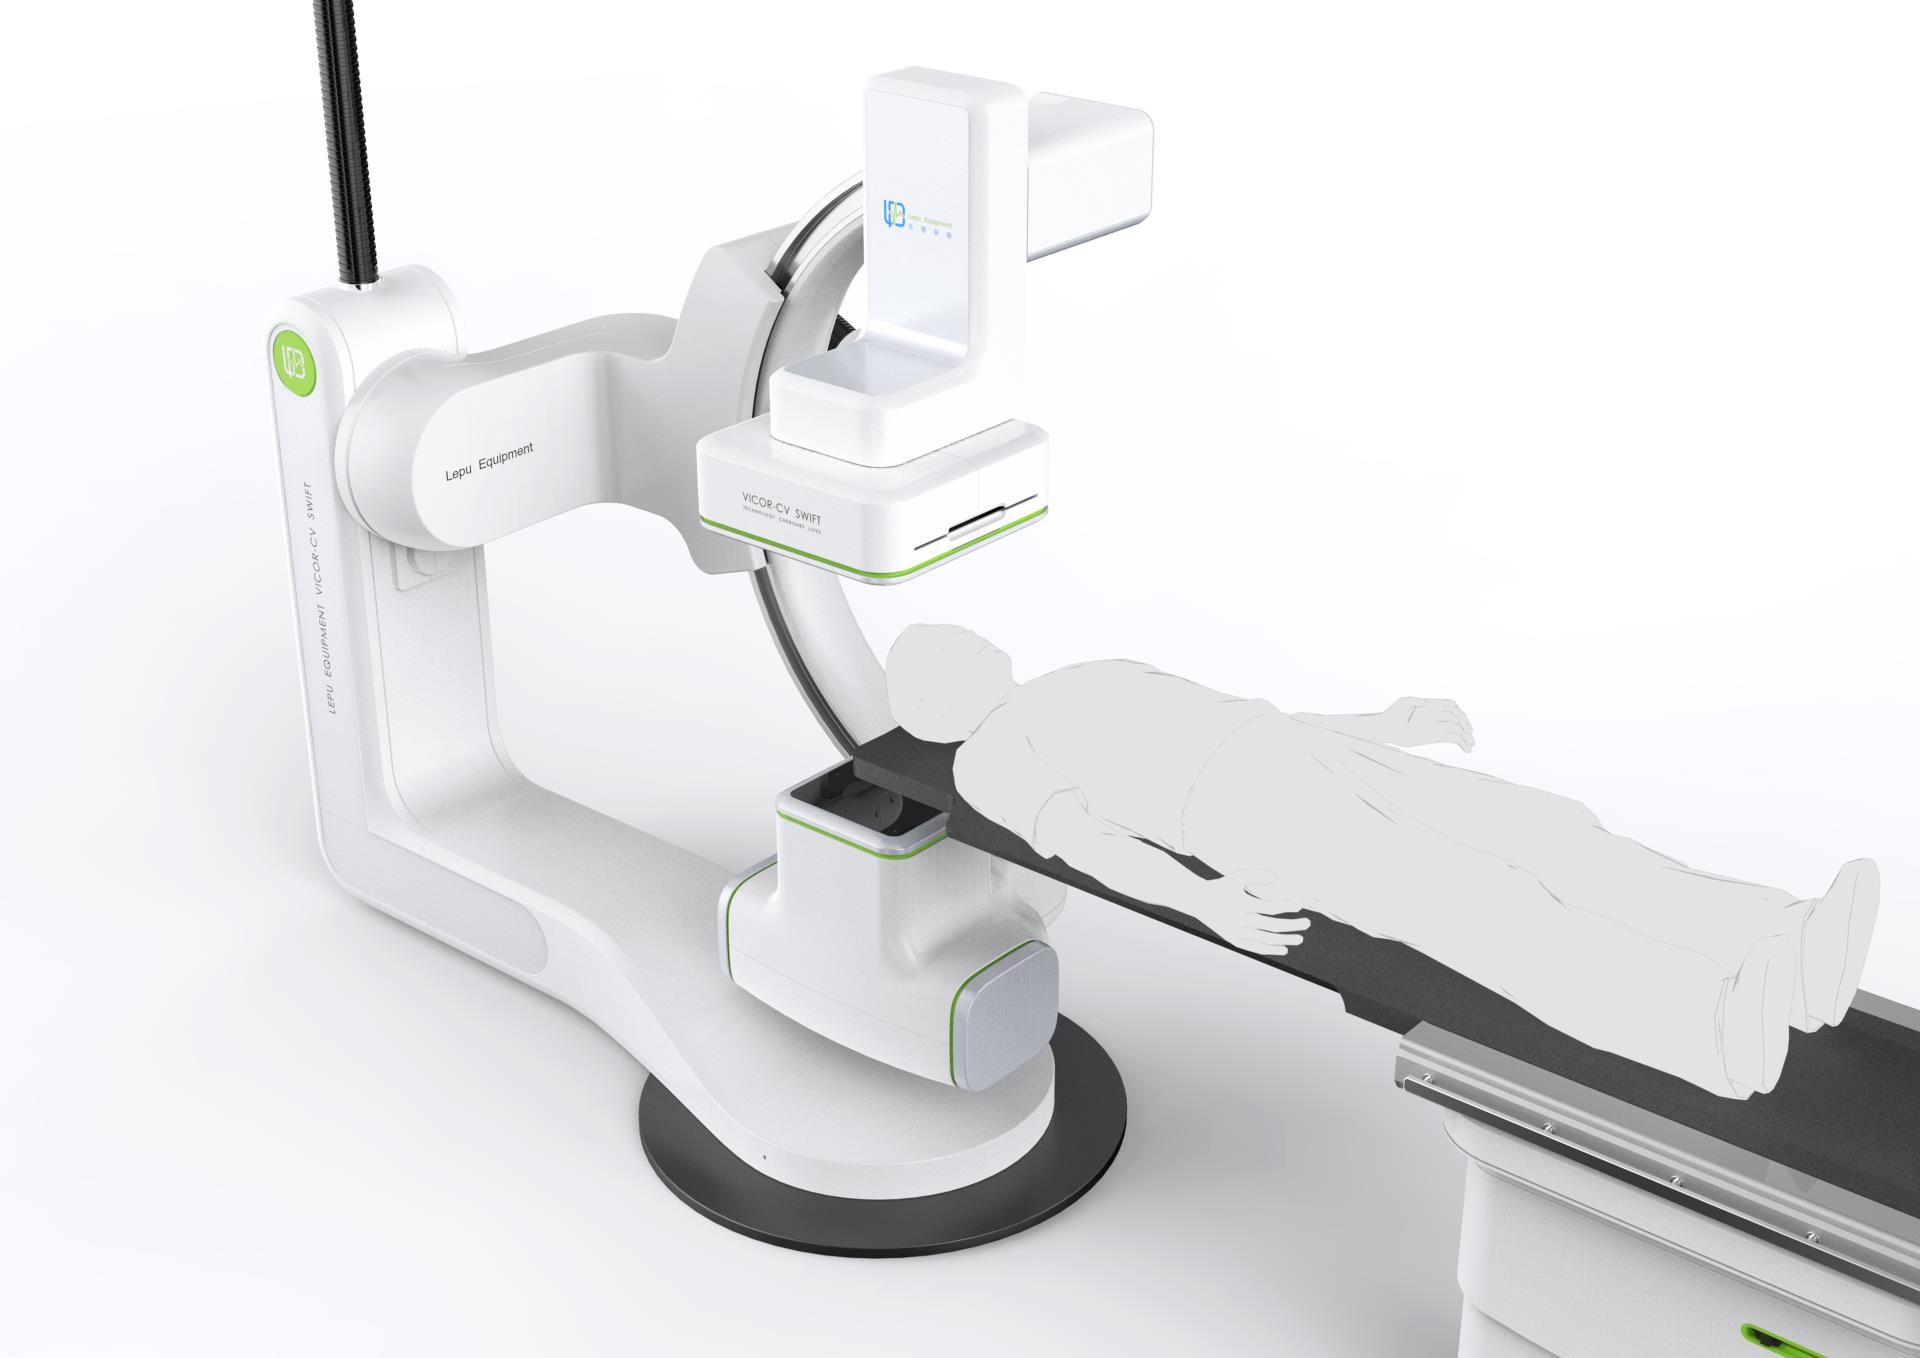 07 - 大尺寸產品圖片《樂普醫用血管造影X射線機》LEPU AngiographicX-raySystem.jpg